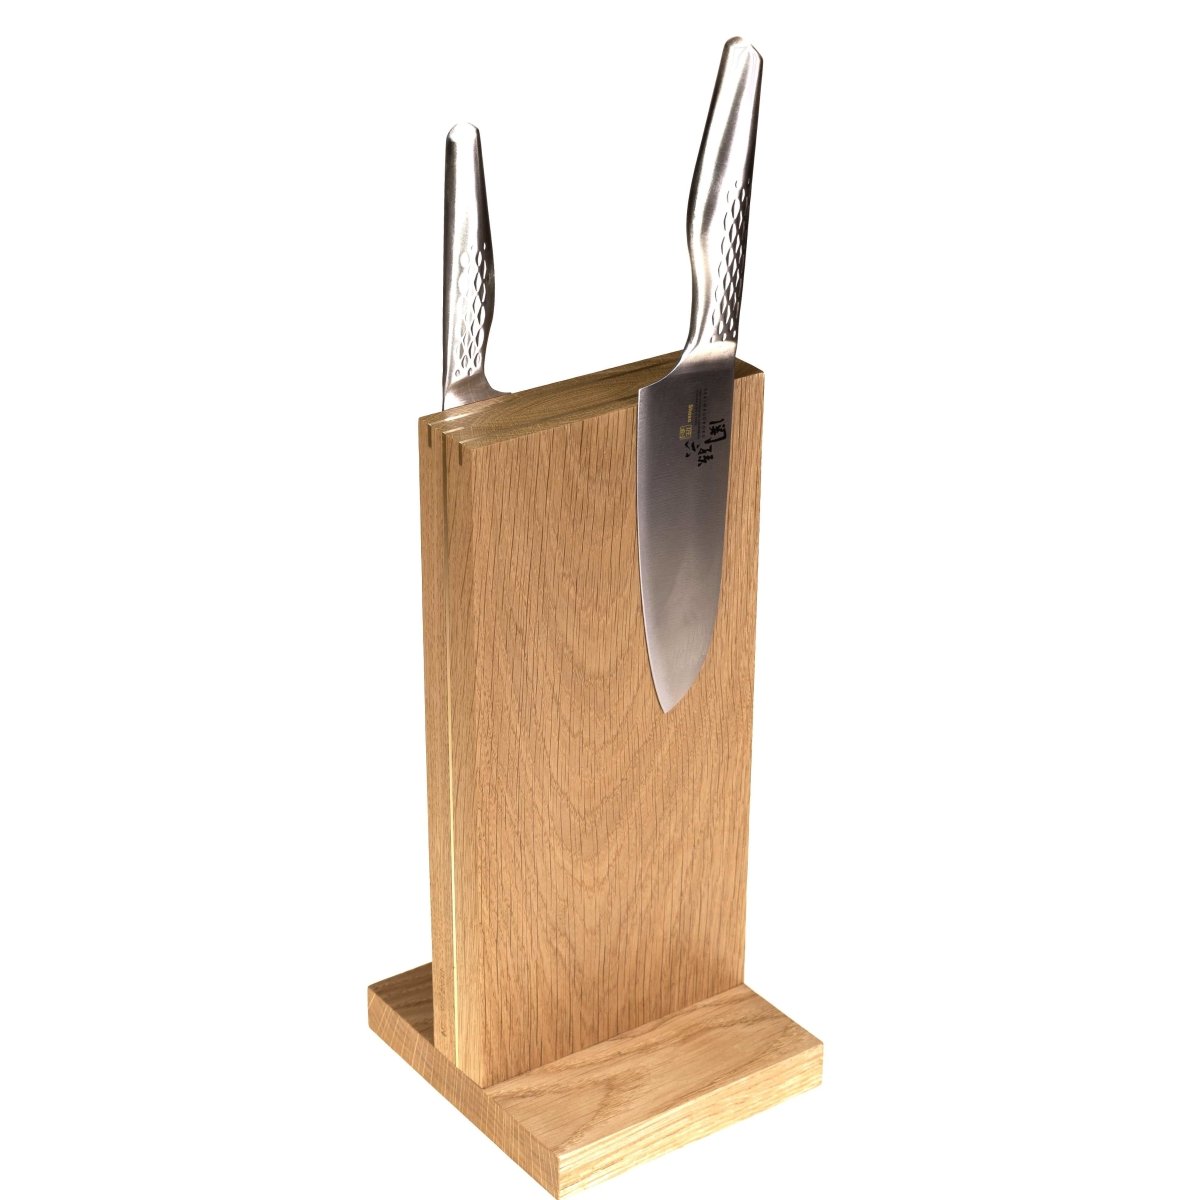 The Monolith magnetisk knivblok - Rune-Jakobsen Design - 15x30cm / Røget eg / Alu